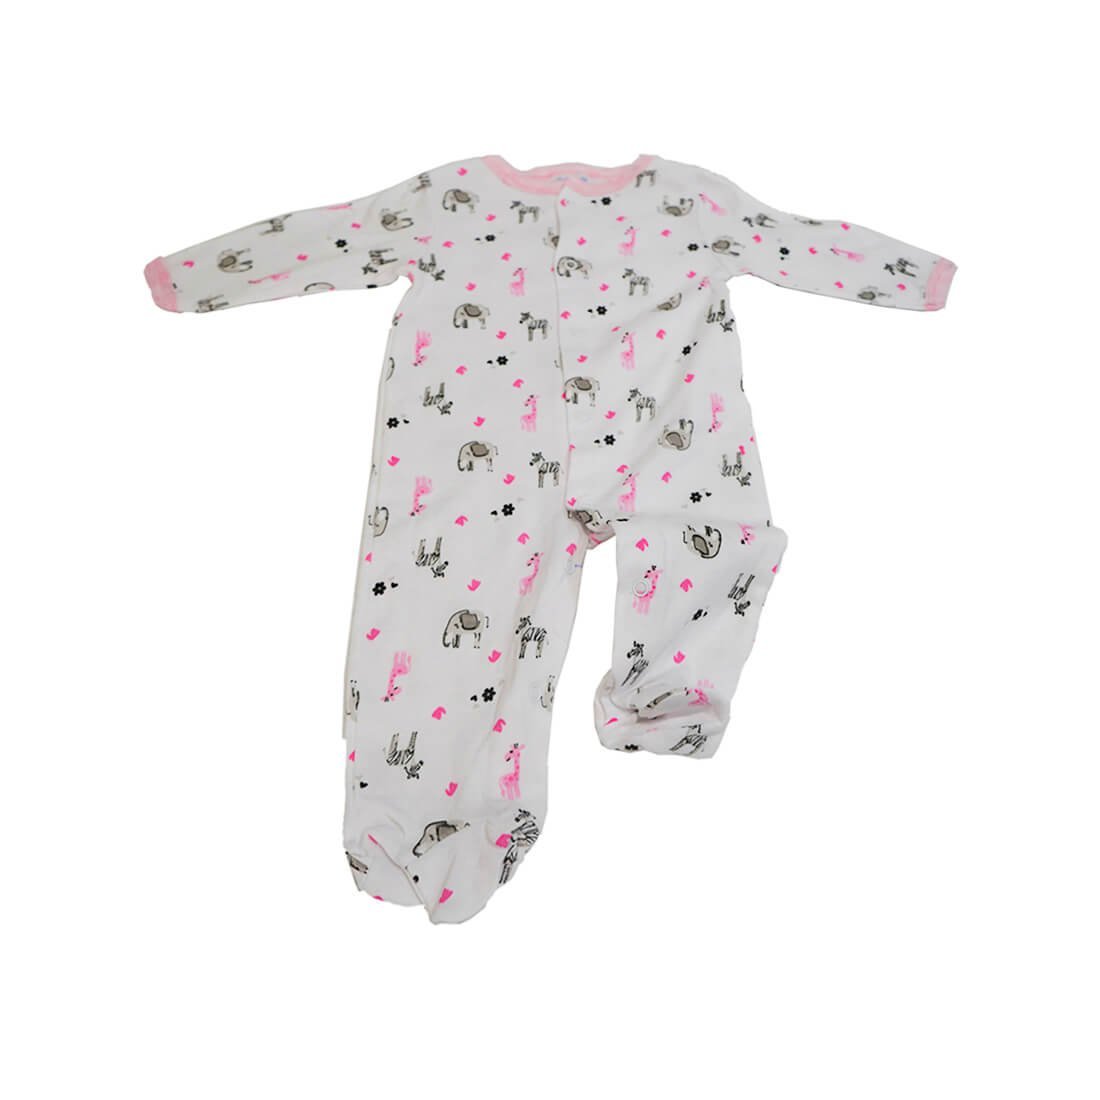 5 piece Pink Ellie 100% cotton Infant Baby Girl Clothes Set - Little Surprise Box5 piece Pink Ellie 100% cotton Infant Baby Girl Clothes Set